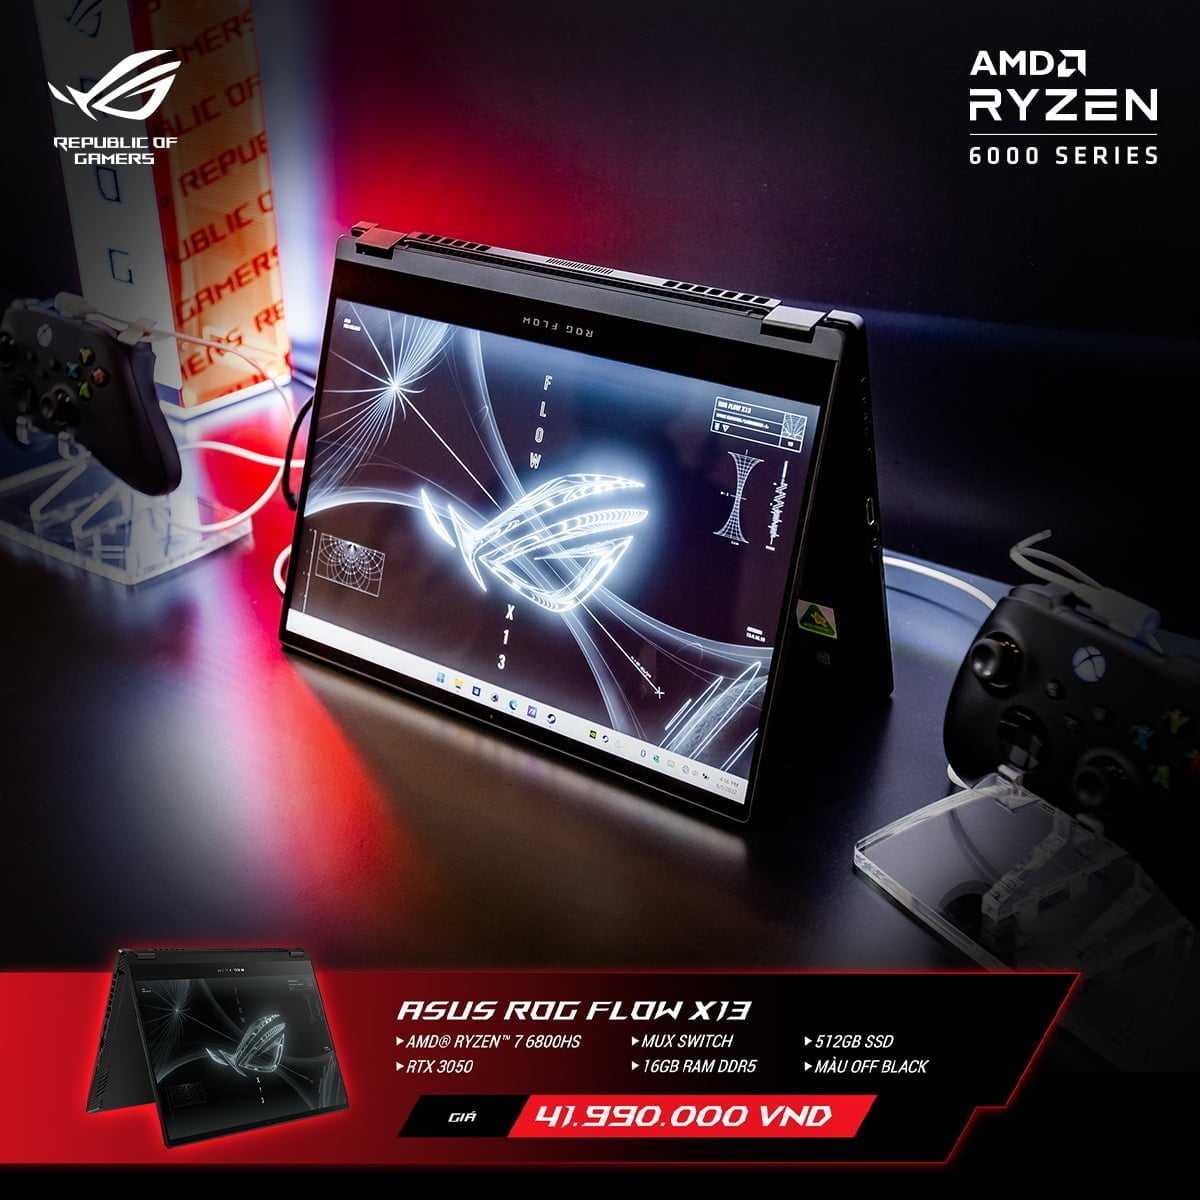 [PR] ASUS ROG công bố loạt sản phẩm laptop mới nền tảng AMD Ryzen 6000 Series tại thị trường Việt Nam - Image 21